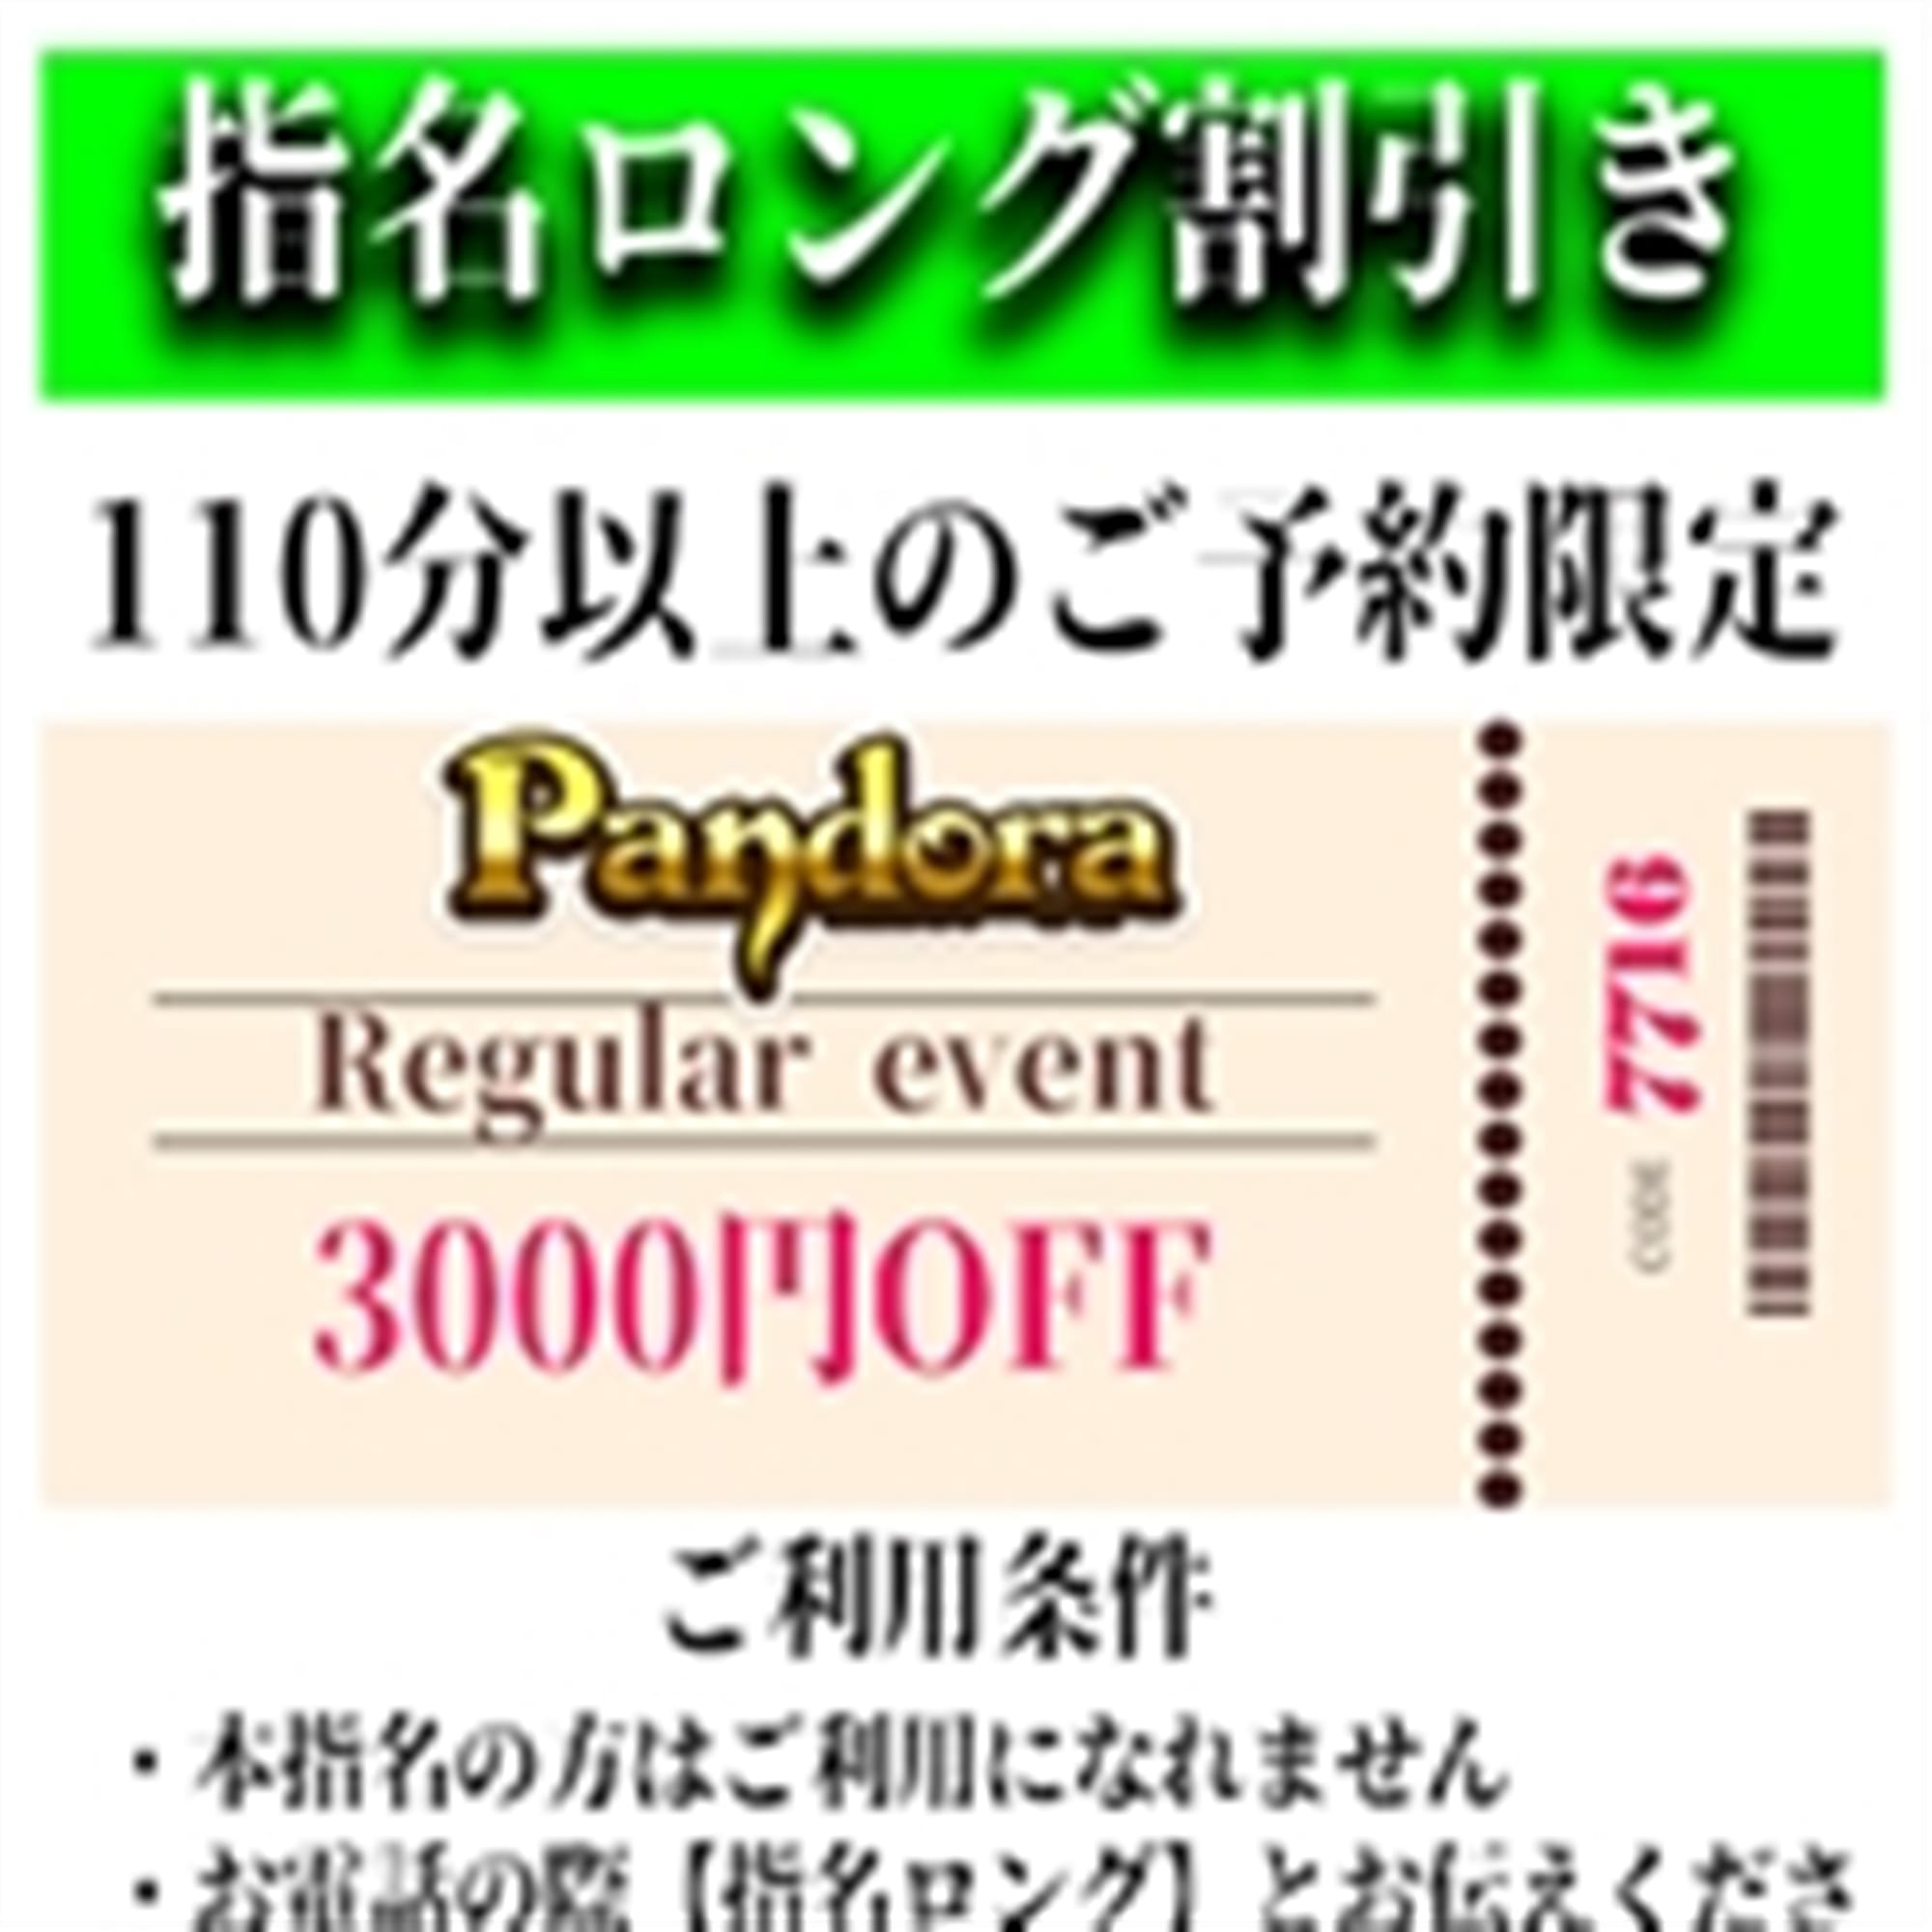 「ご指名のお客様も遊べるロングコース割引」04/26(金) 19:28 | Pandora(パンドラ)新潟のお得なニュース